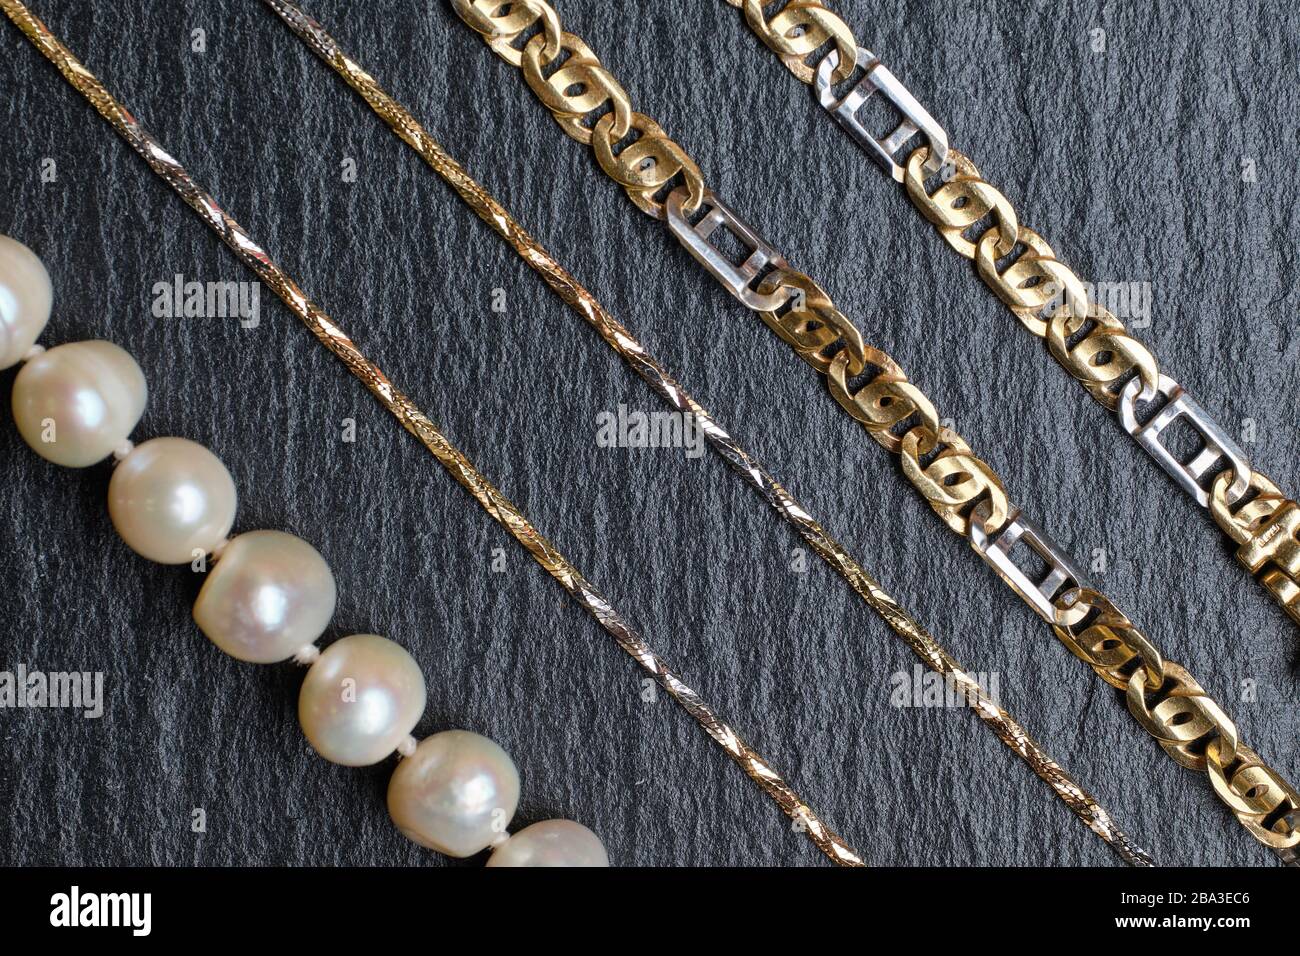 Verschiedene Arten von Goldketten und Perlen auf einem Steinbrett.  Nahaufnahme Stockfotografie - Alamy